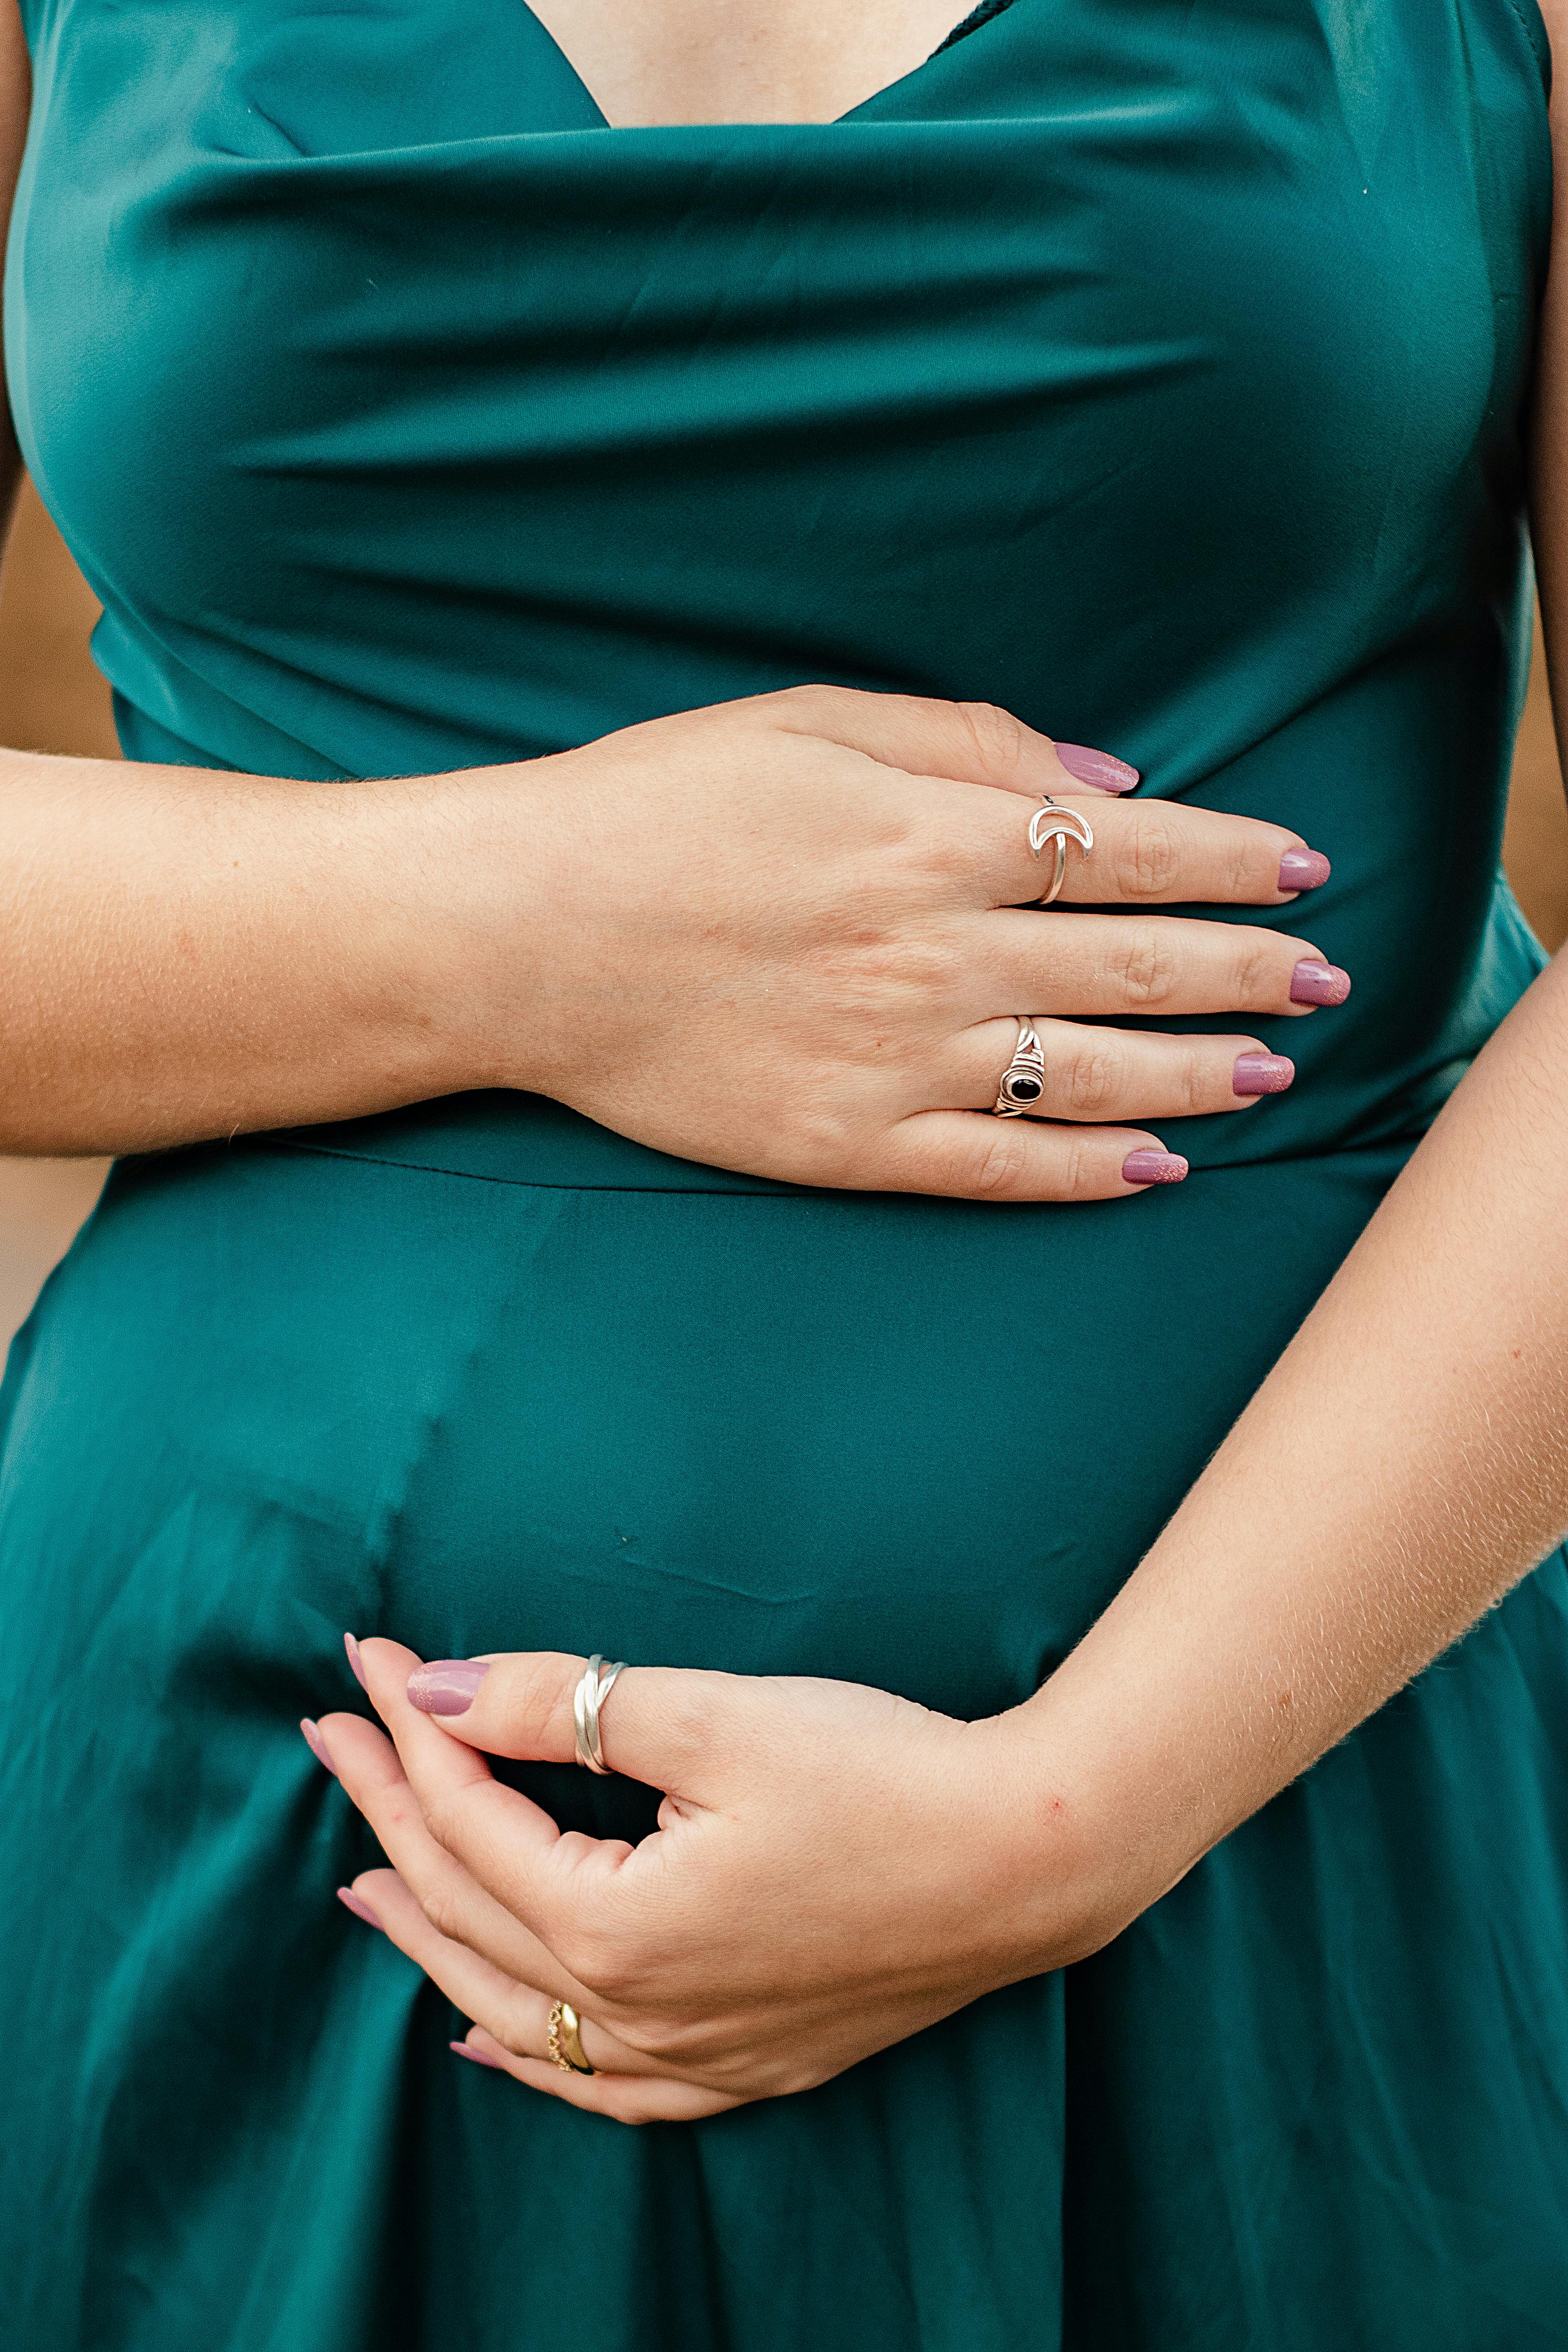 Une femme enceinte tenant son baby bump | Source : Pexels